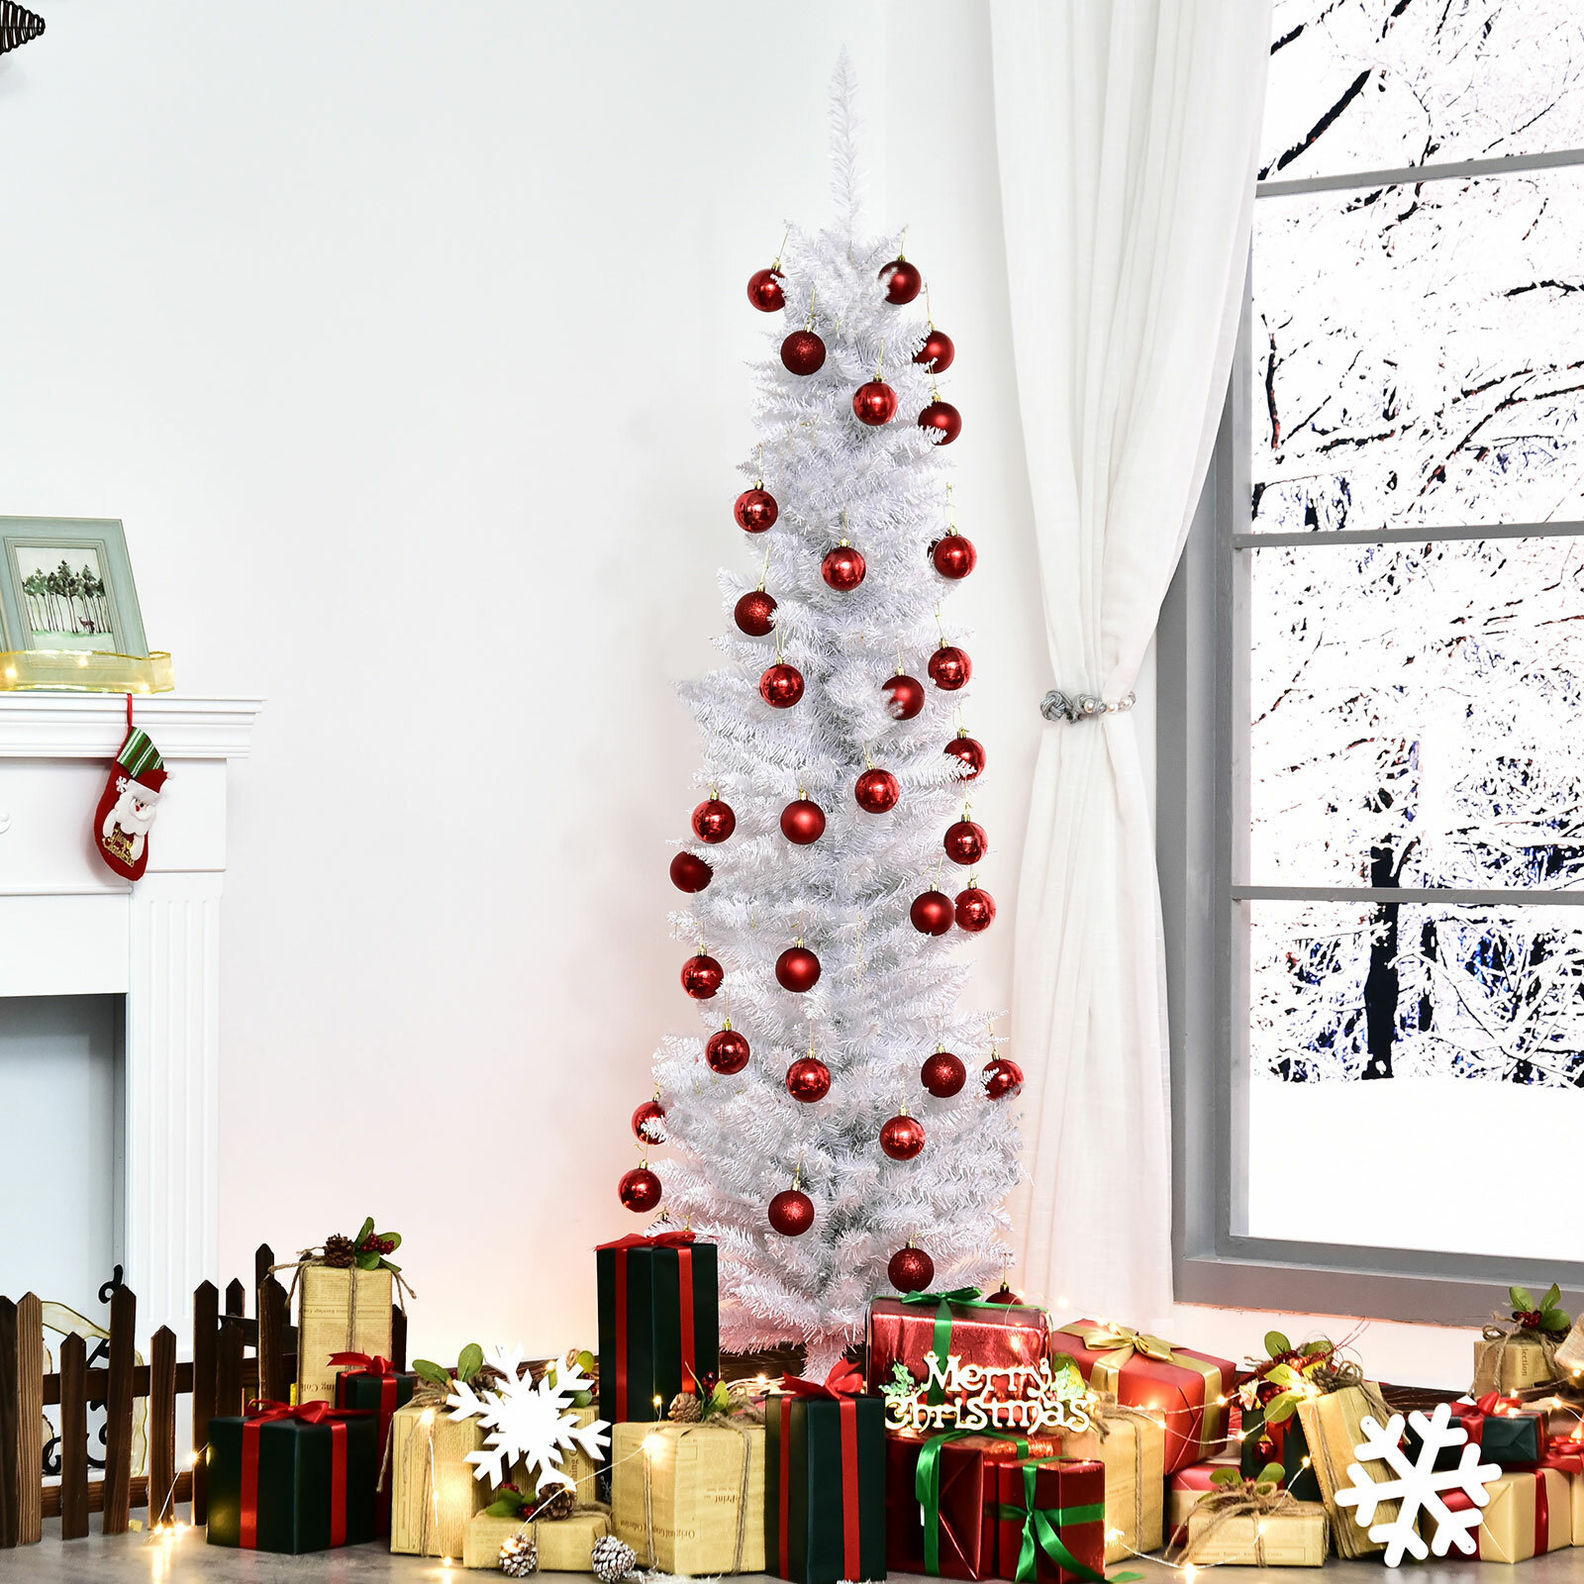 Weihnachtsbaum mit Kunststoffständer Farbe: weiß | Weltbild.de